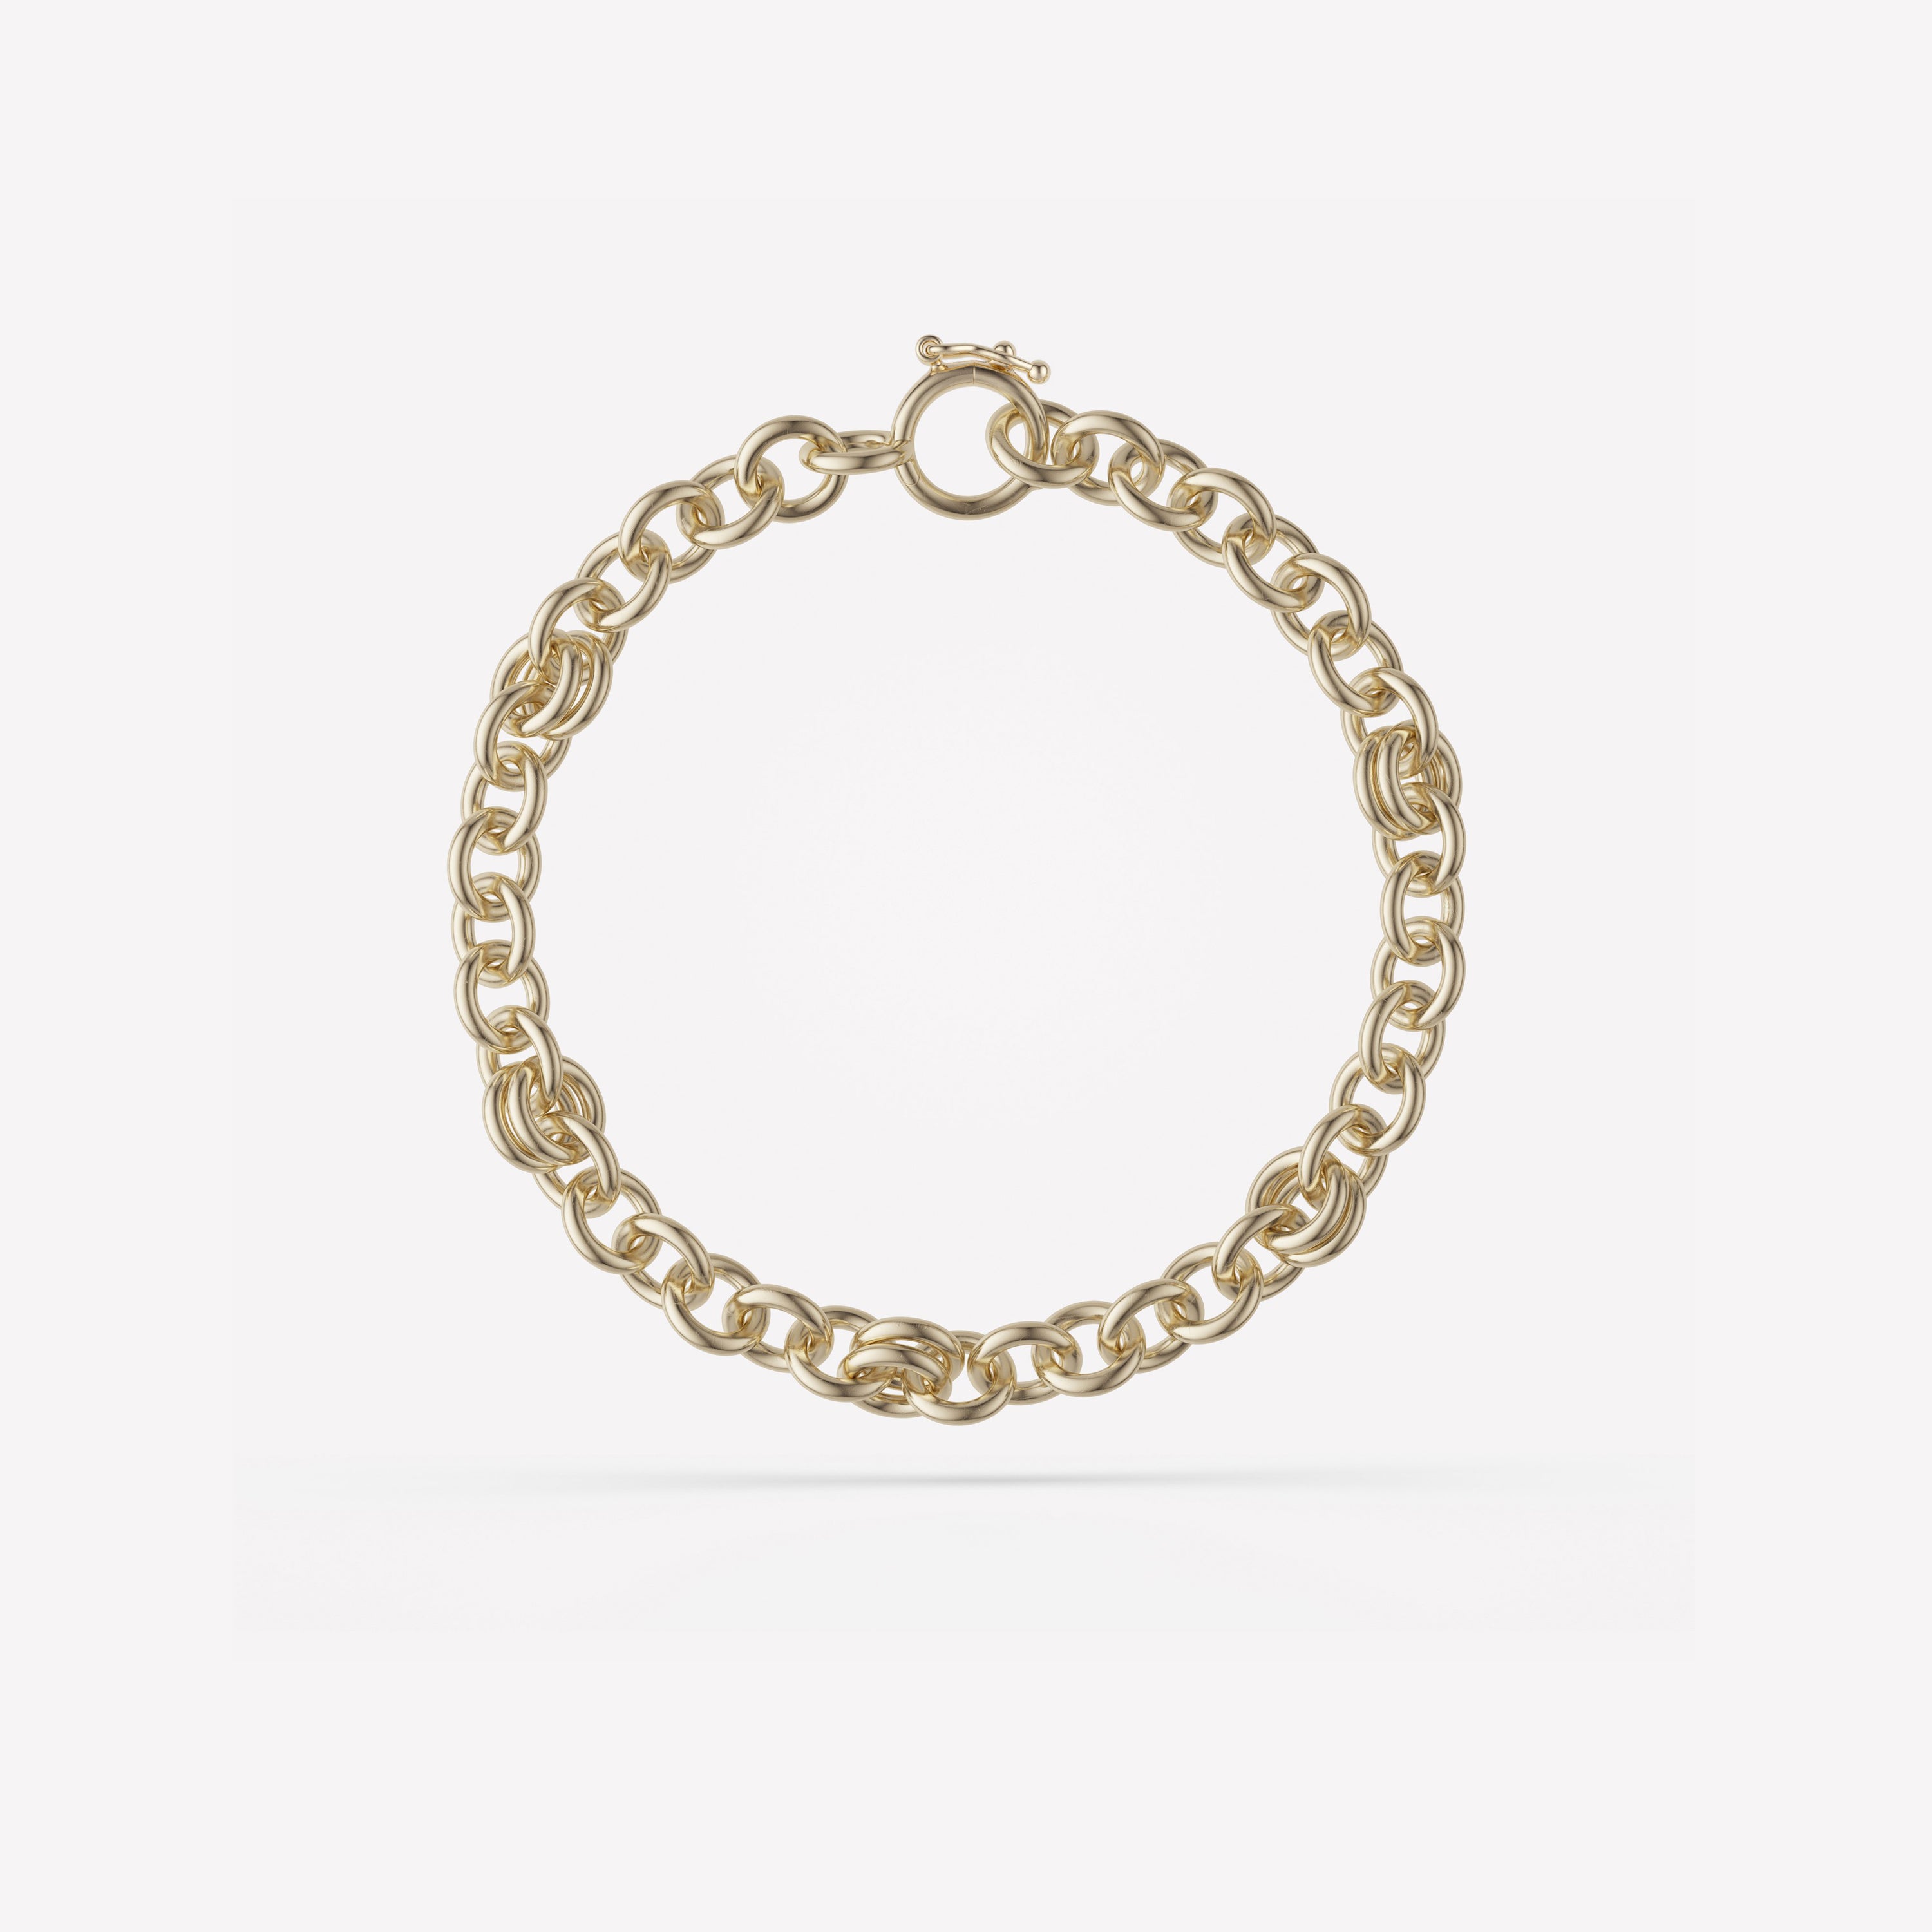 Serpens Chain Bracelet by Spinelli Kilcollin